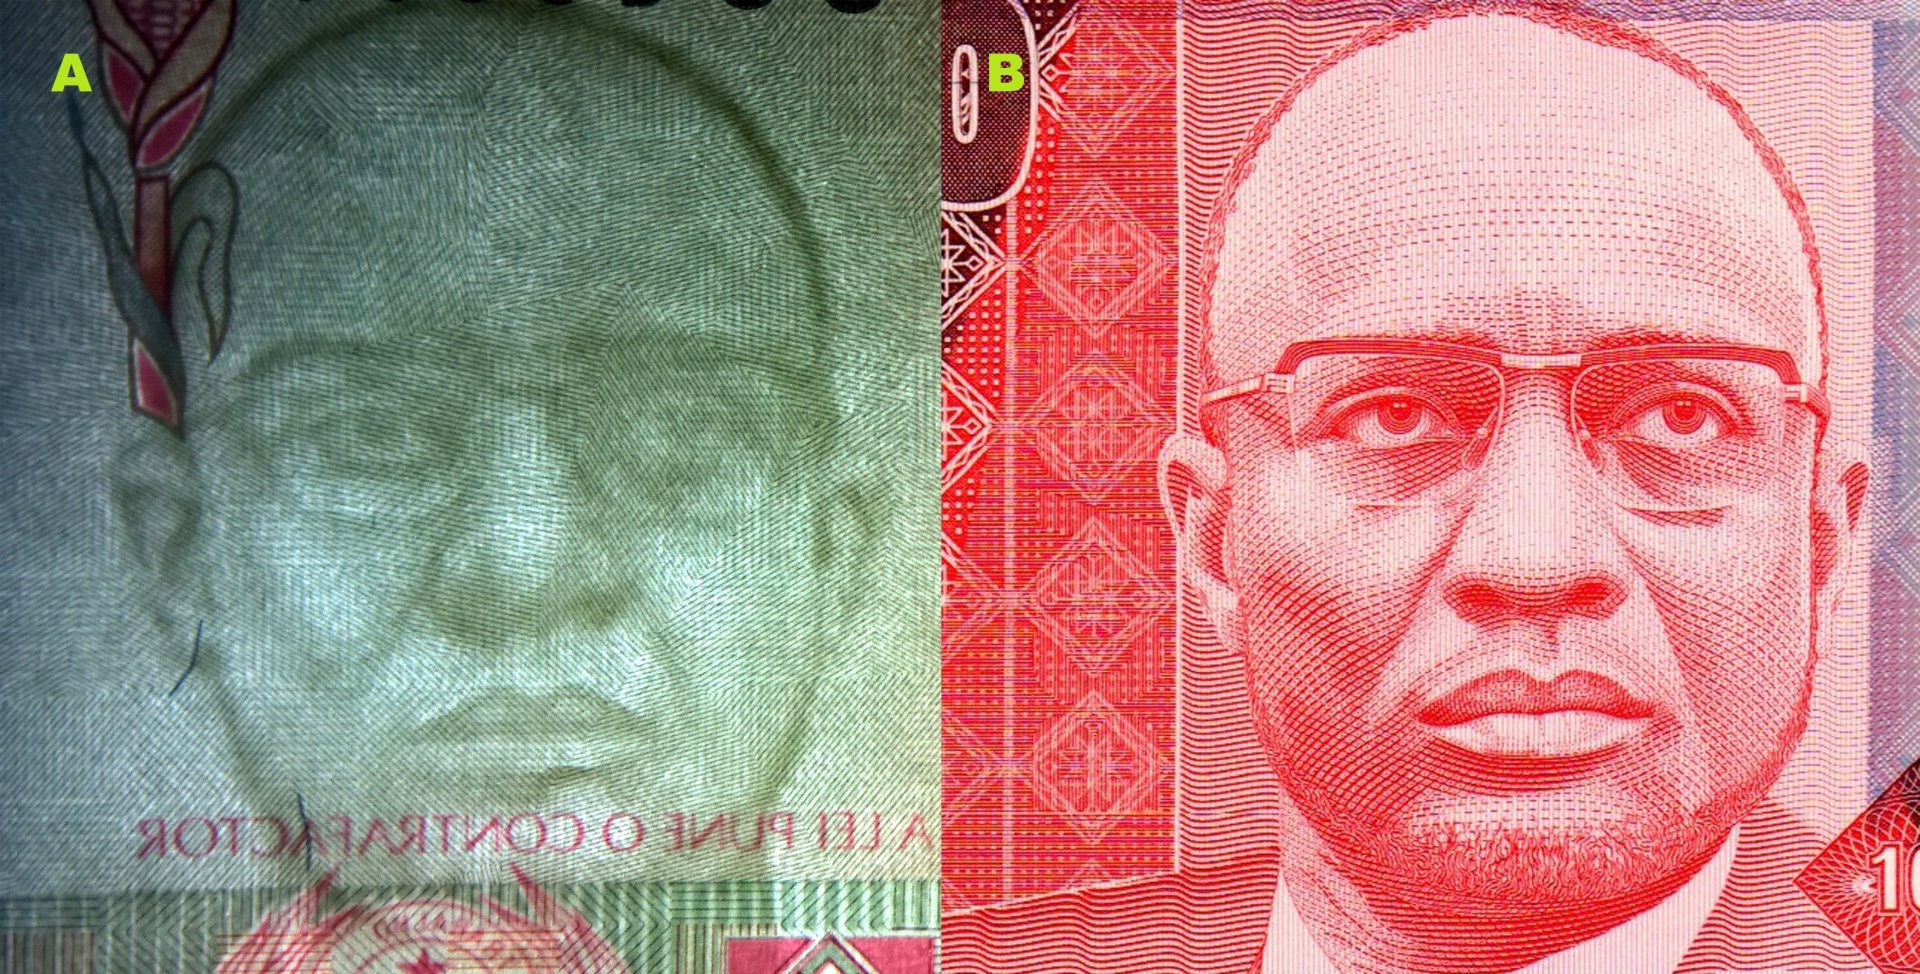 Obr. 2. A) Souhlasný tmavočarý vodotisk. B) portrét Amílcara Cabrala na bankovce P#57